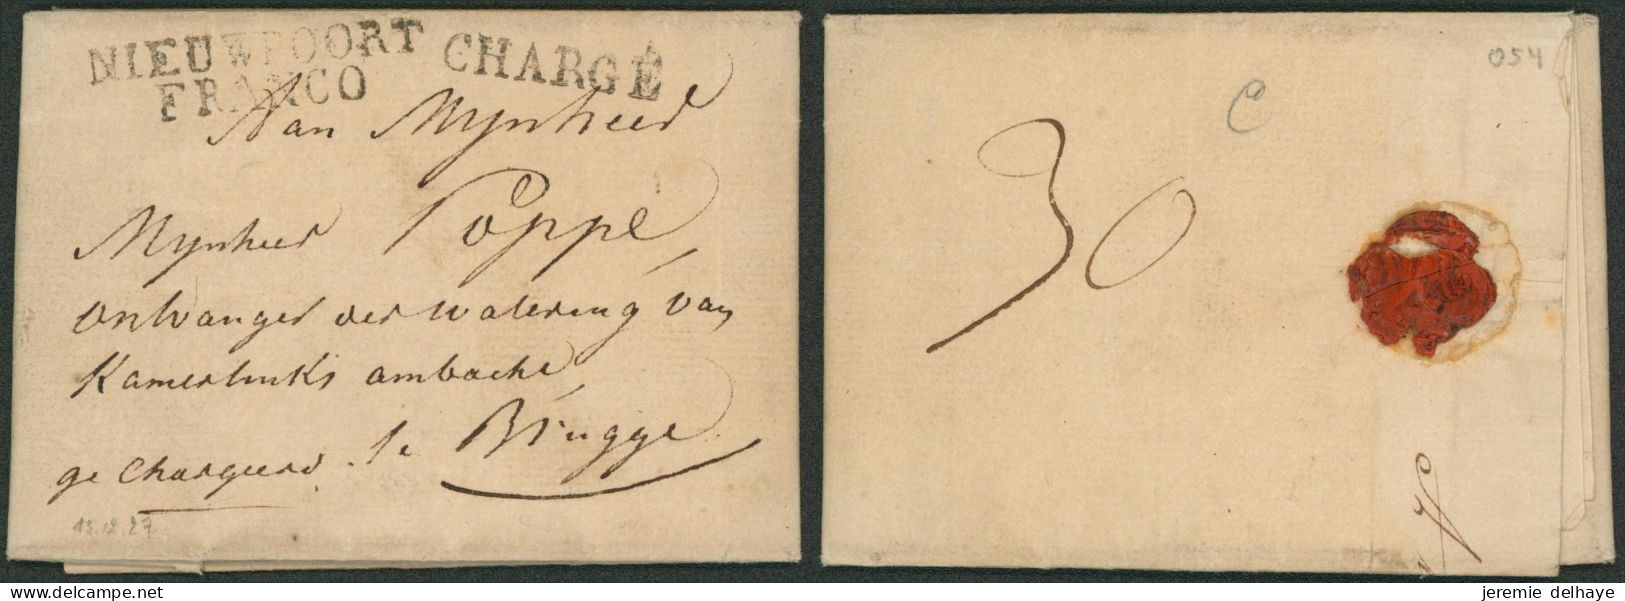 LAC Daté De Nieuport (1827) + Obl Linéaire Noir NIEUWPOORT / FRANCO (R) & Chargé > Brugge. Combinaison !! - 1815-1830 (Dutch Period)